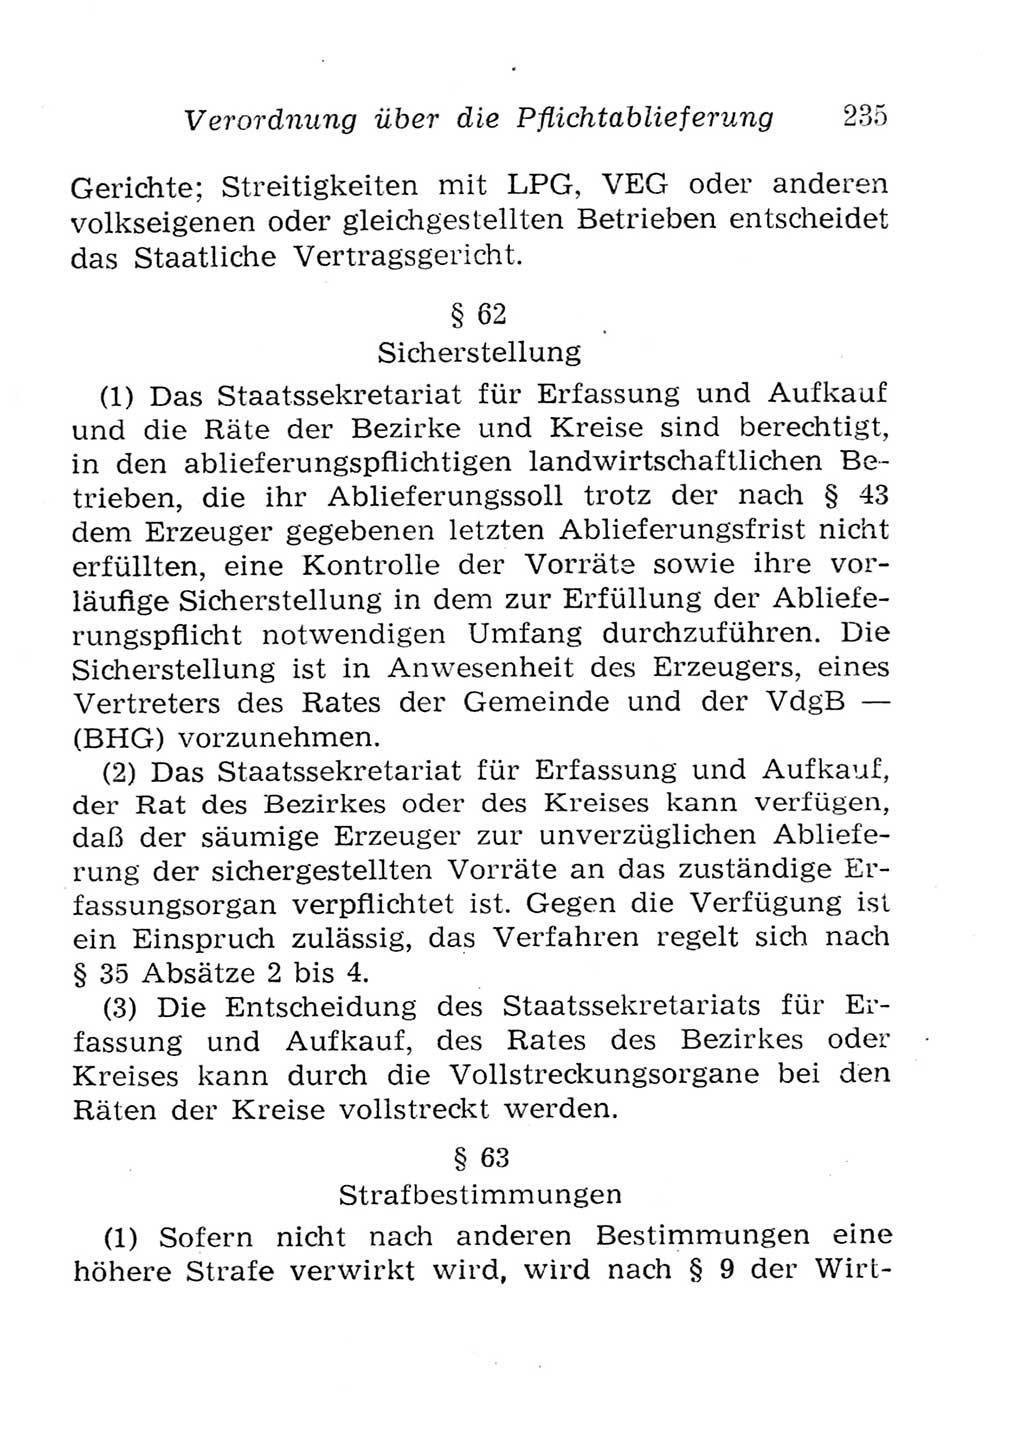 Strafgesetzbuch (StGB) und andere Strafgesetze [Deutsche Demokratische Republik (DDR)] 1957, Seite 235 (StGB Strafges. DDR 1957, S. 235)